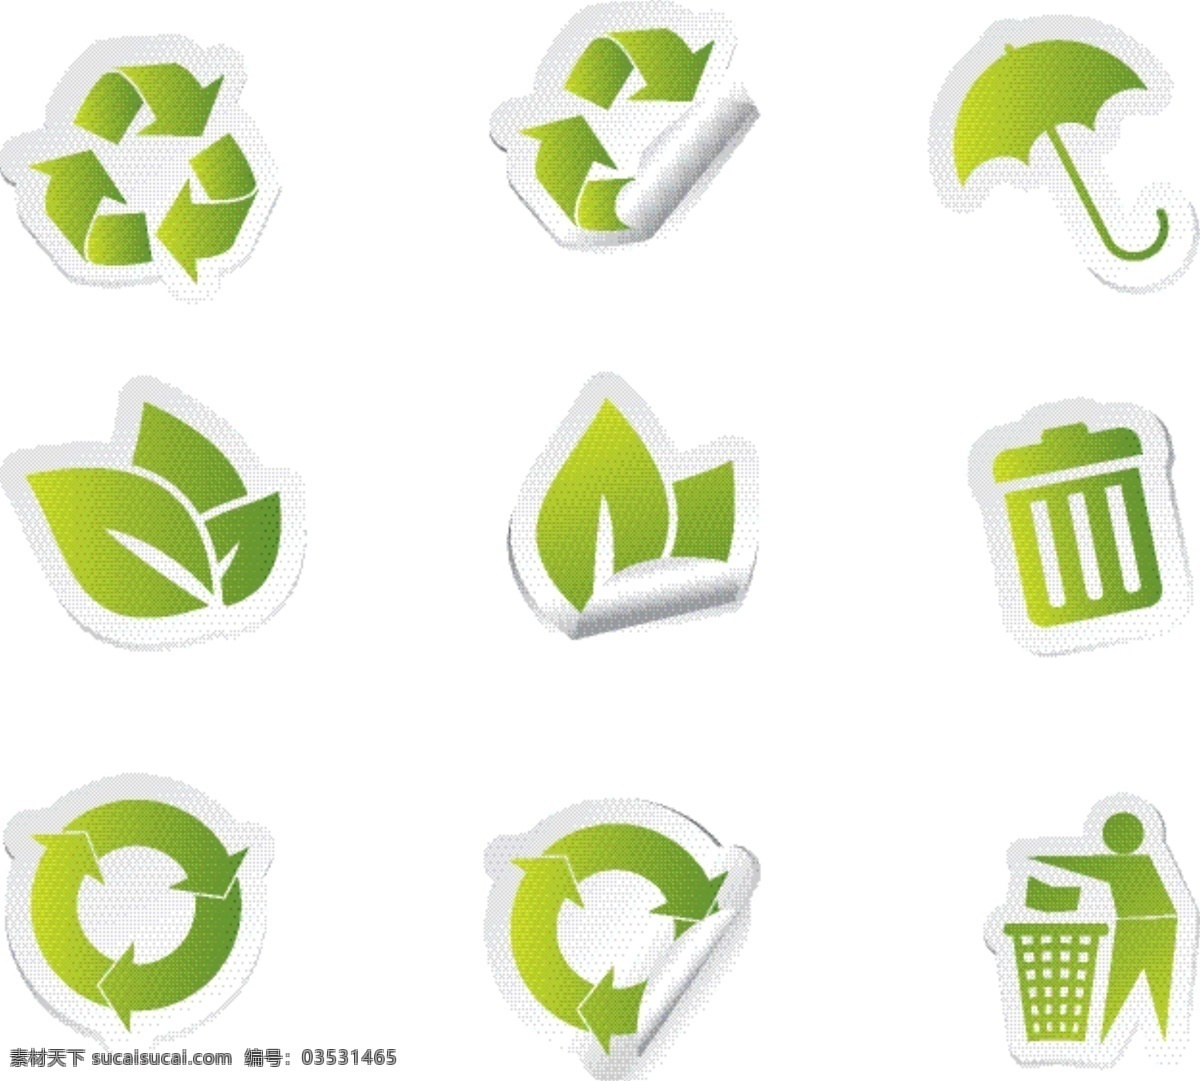 立体感 标签 式 环保 图标 矢量 低碳 节能 绿叶 矢量素材 雨伞 箭头垃圾桶 矢量图 其他矢量图